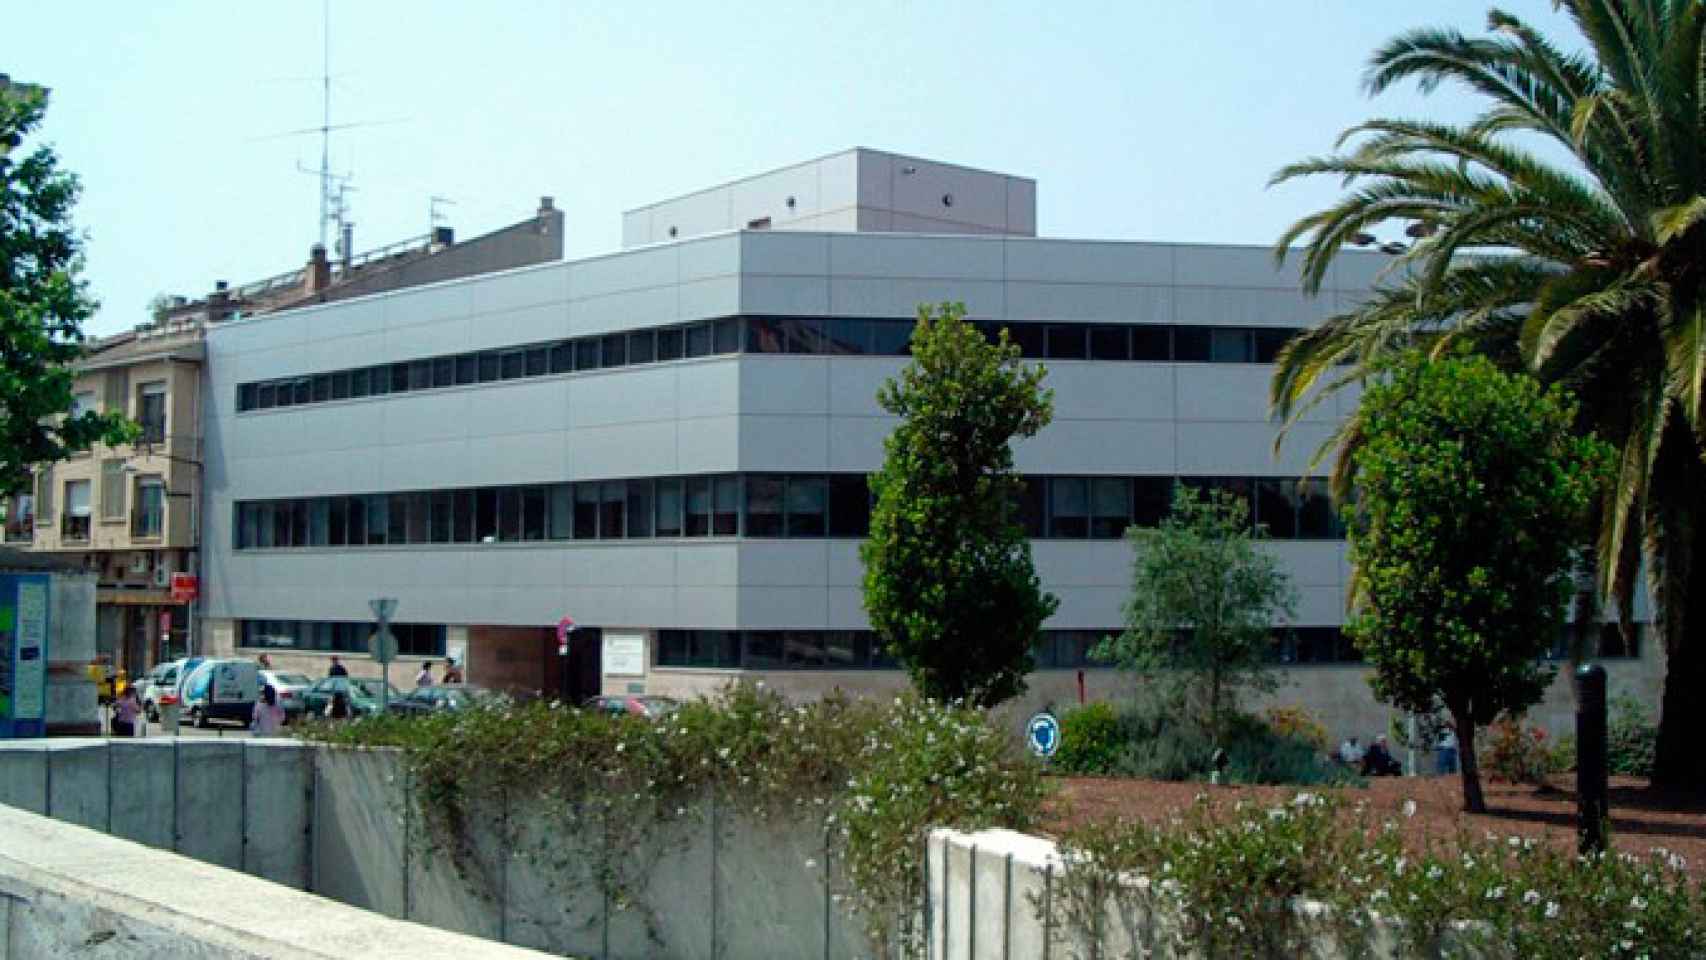 El Hospital de Palamós, donde murió una anciana tras siete horas en urgencias / CG